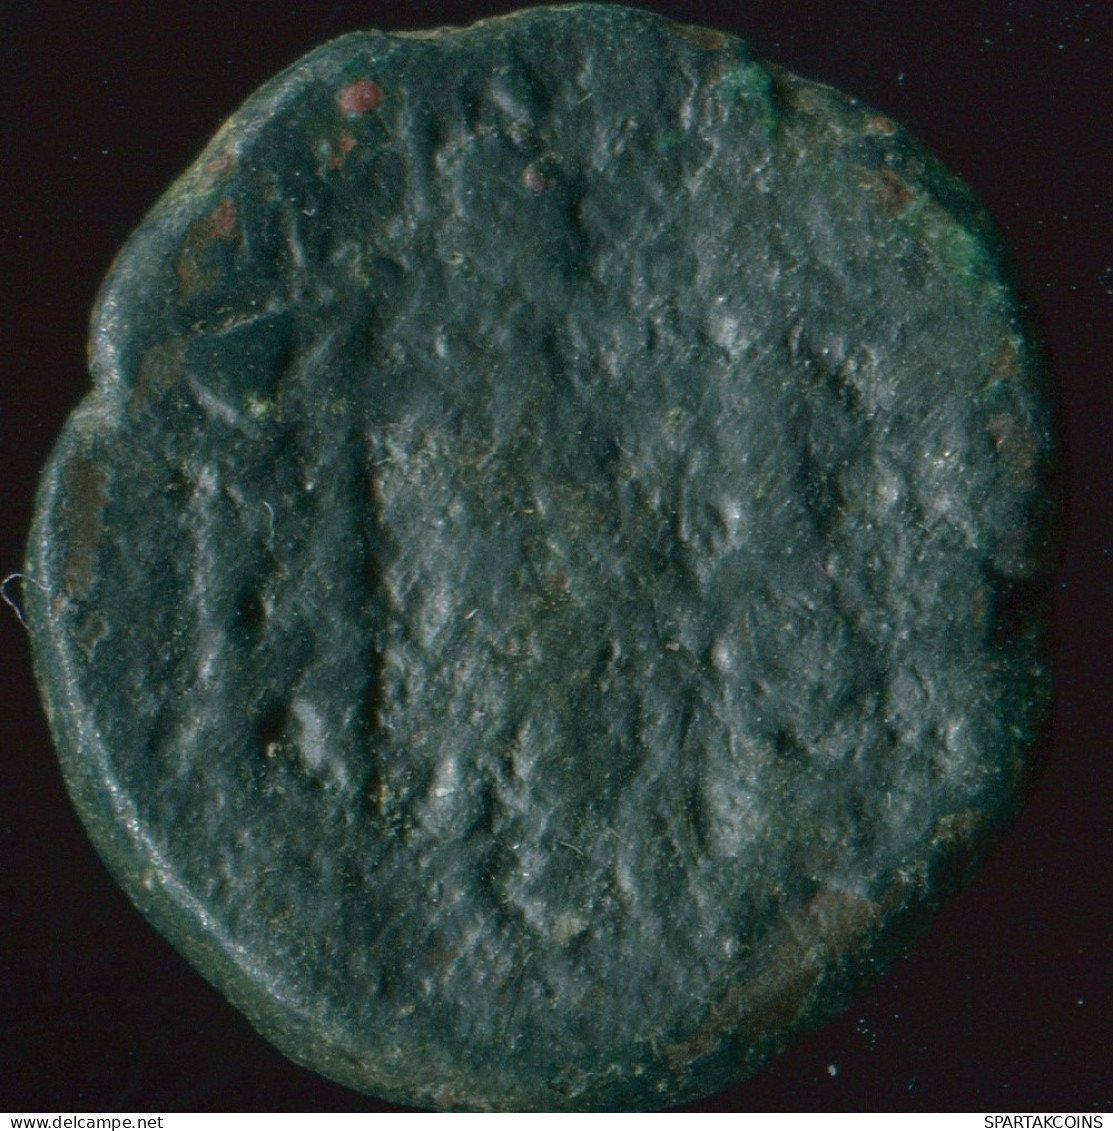 GRIECHISCHE Münze Thessalian League Apollo Athena 6.30g/19.57mm GRIECHISCHE Münze #GRK1492.10.D.A - Greek